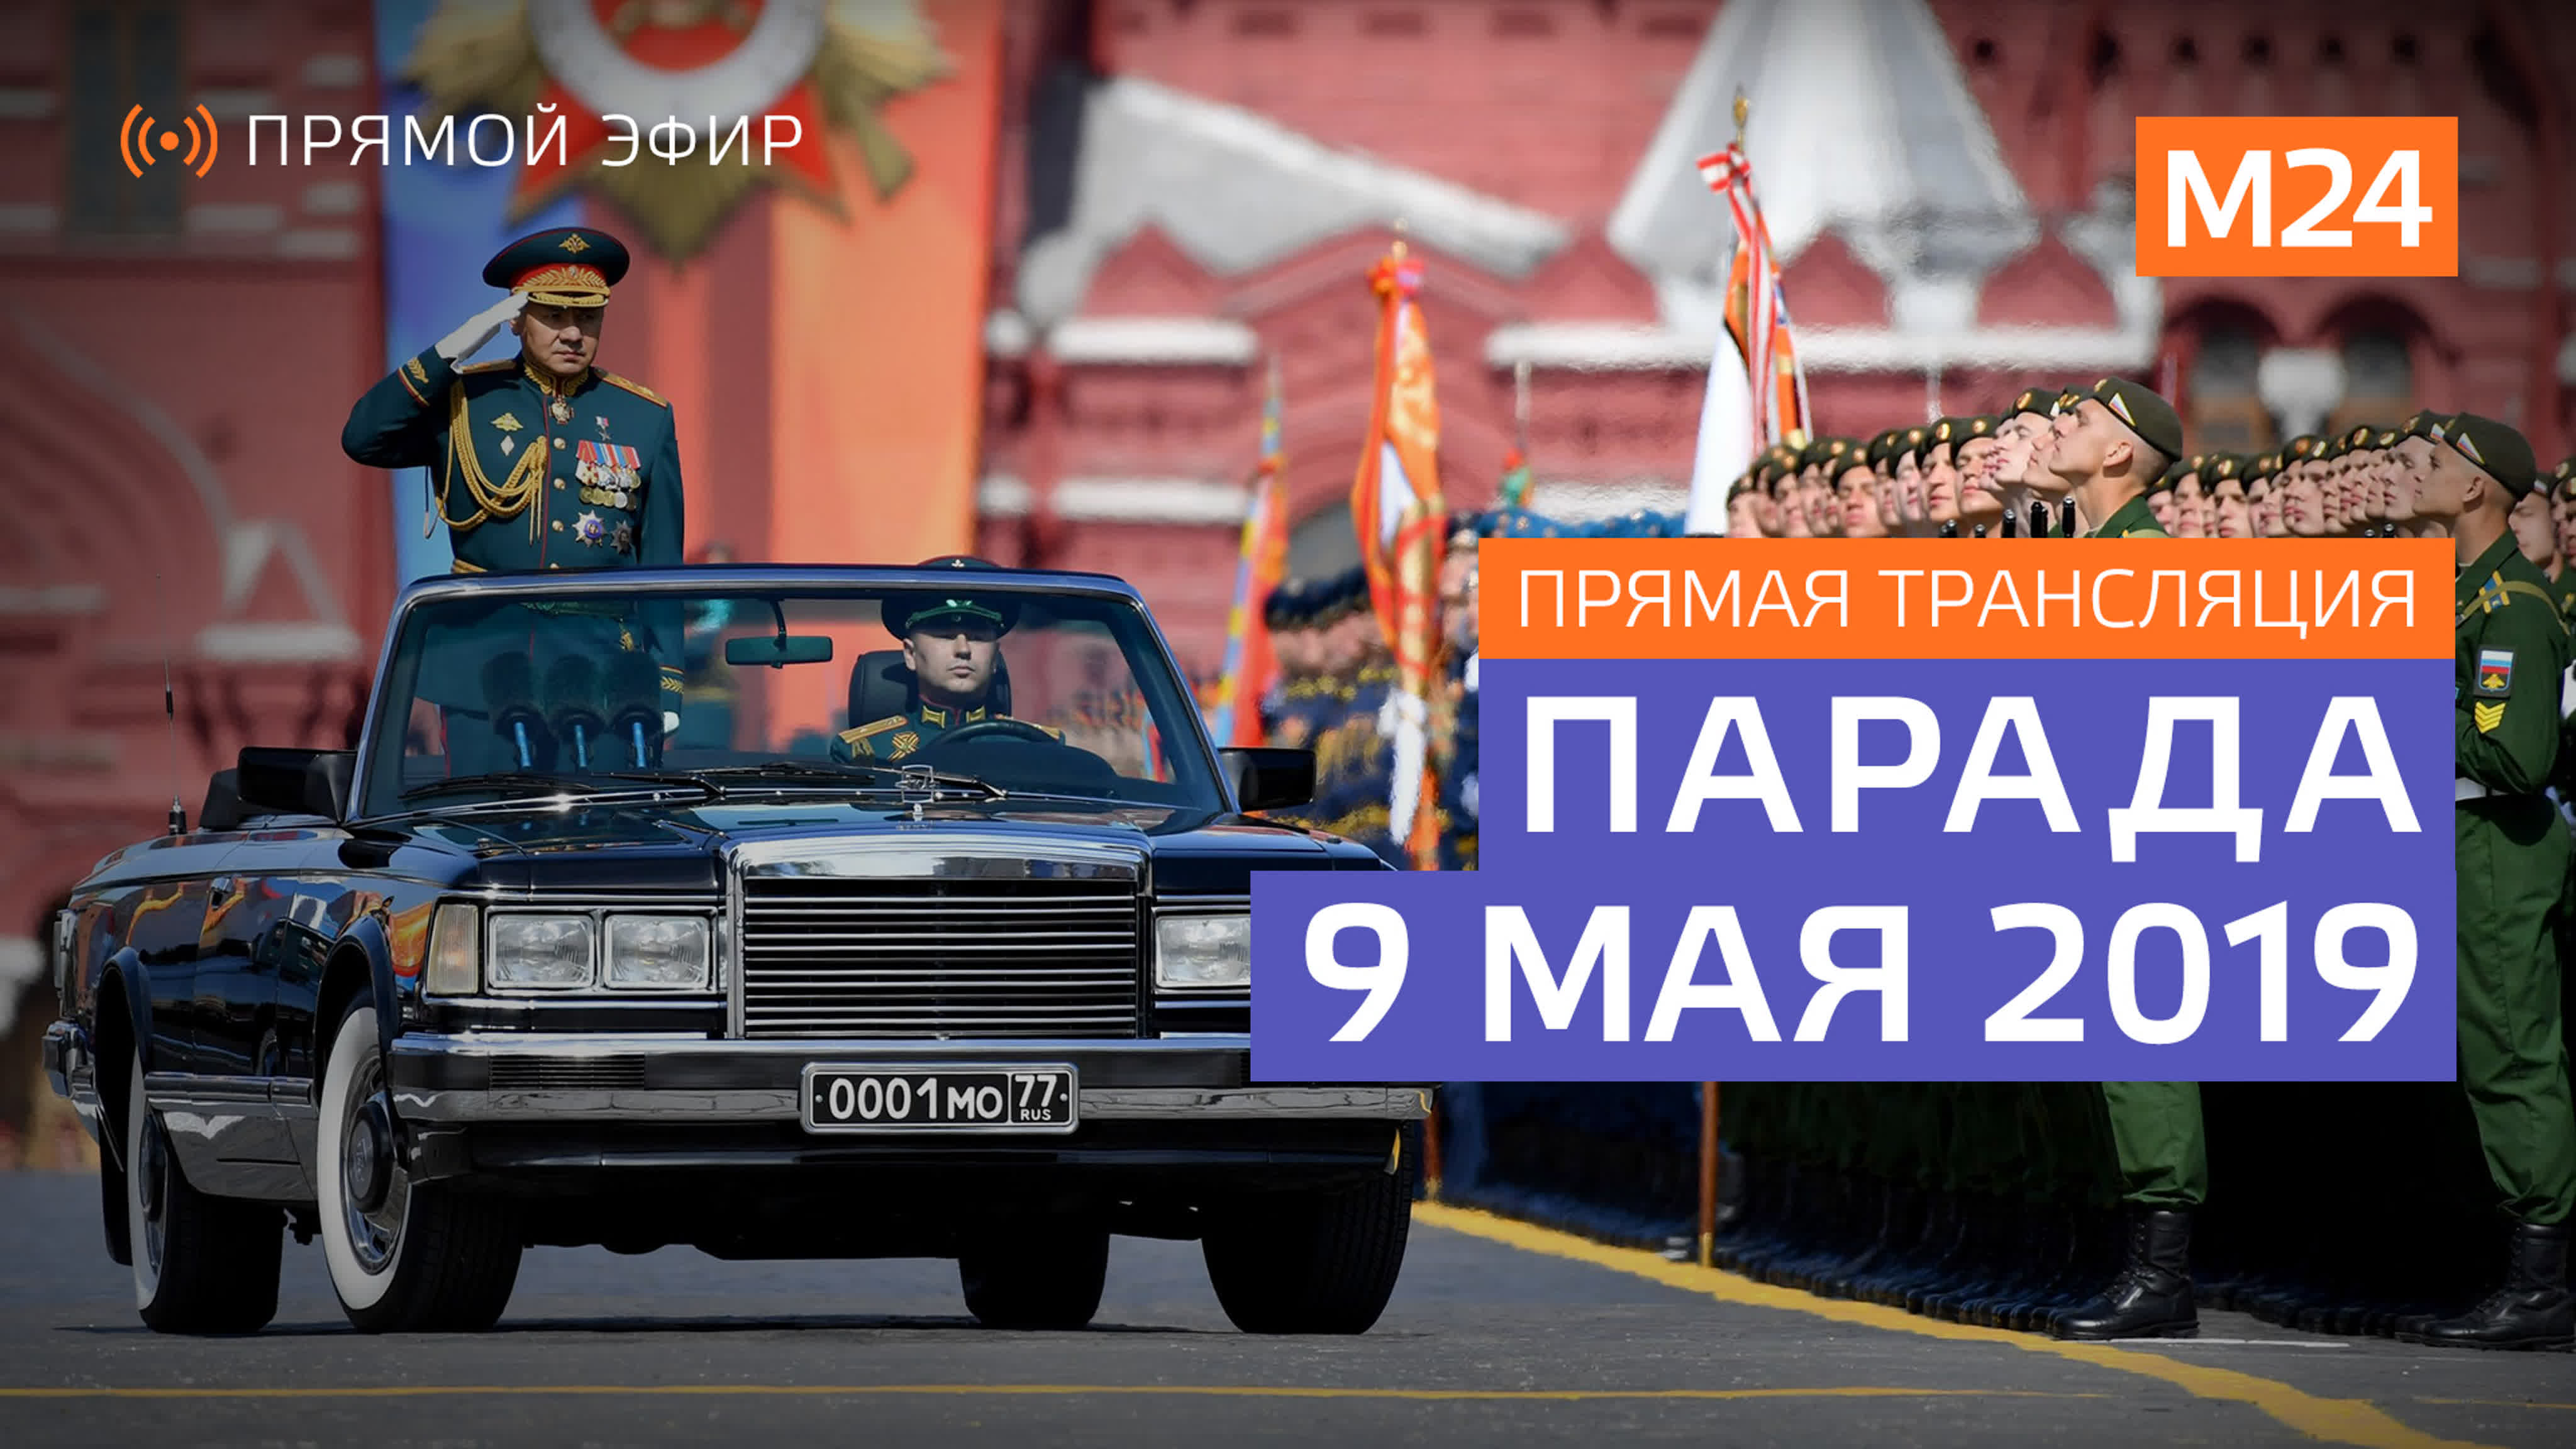 Парад Победы 9 мая 2019 года в Москве: Прямая трансляция - Москва 24 #9маявэфире